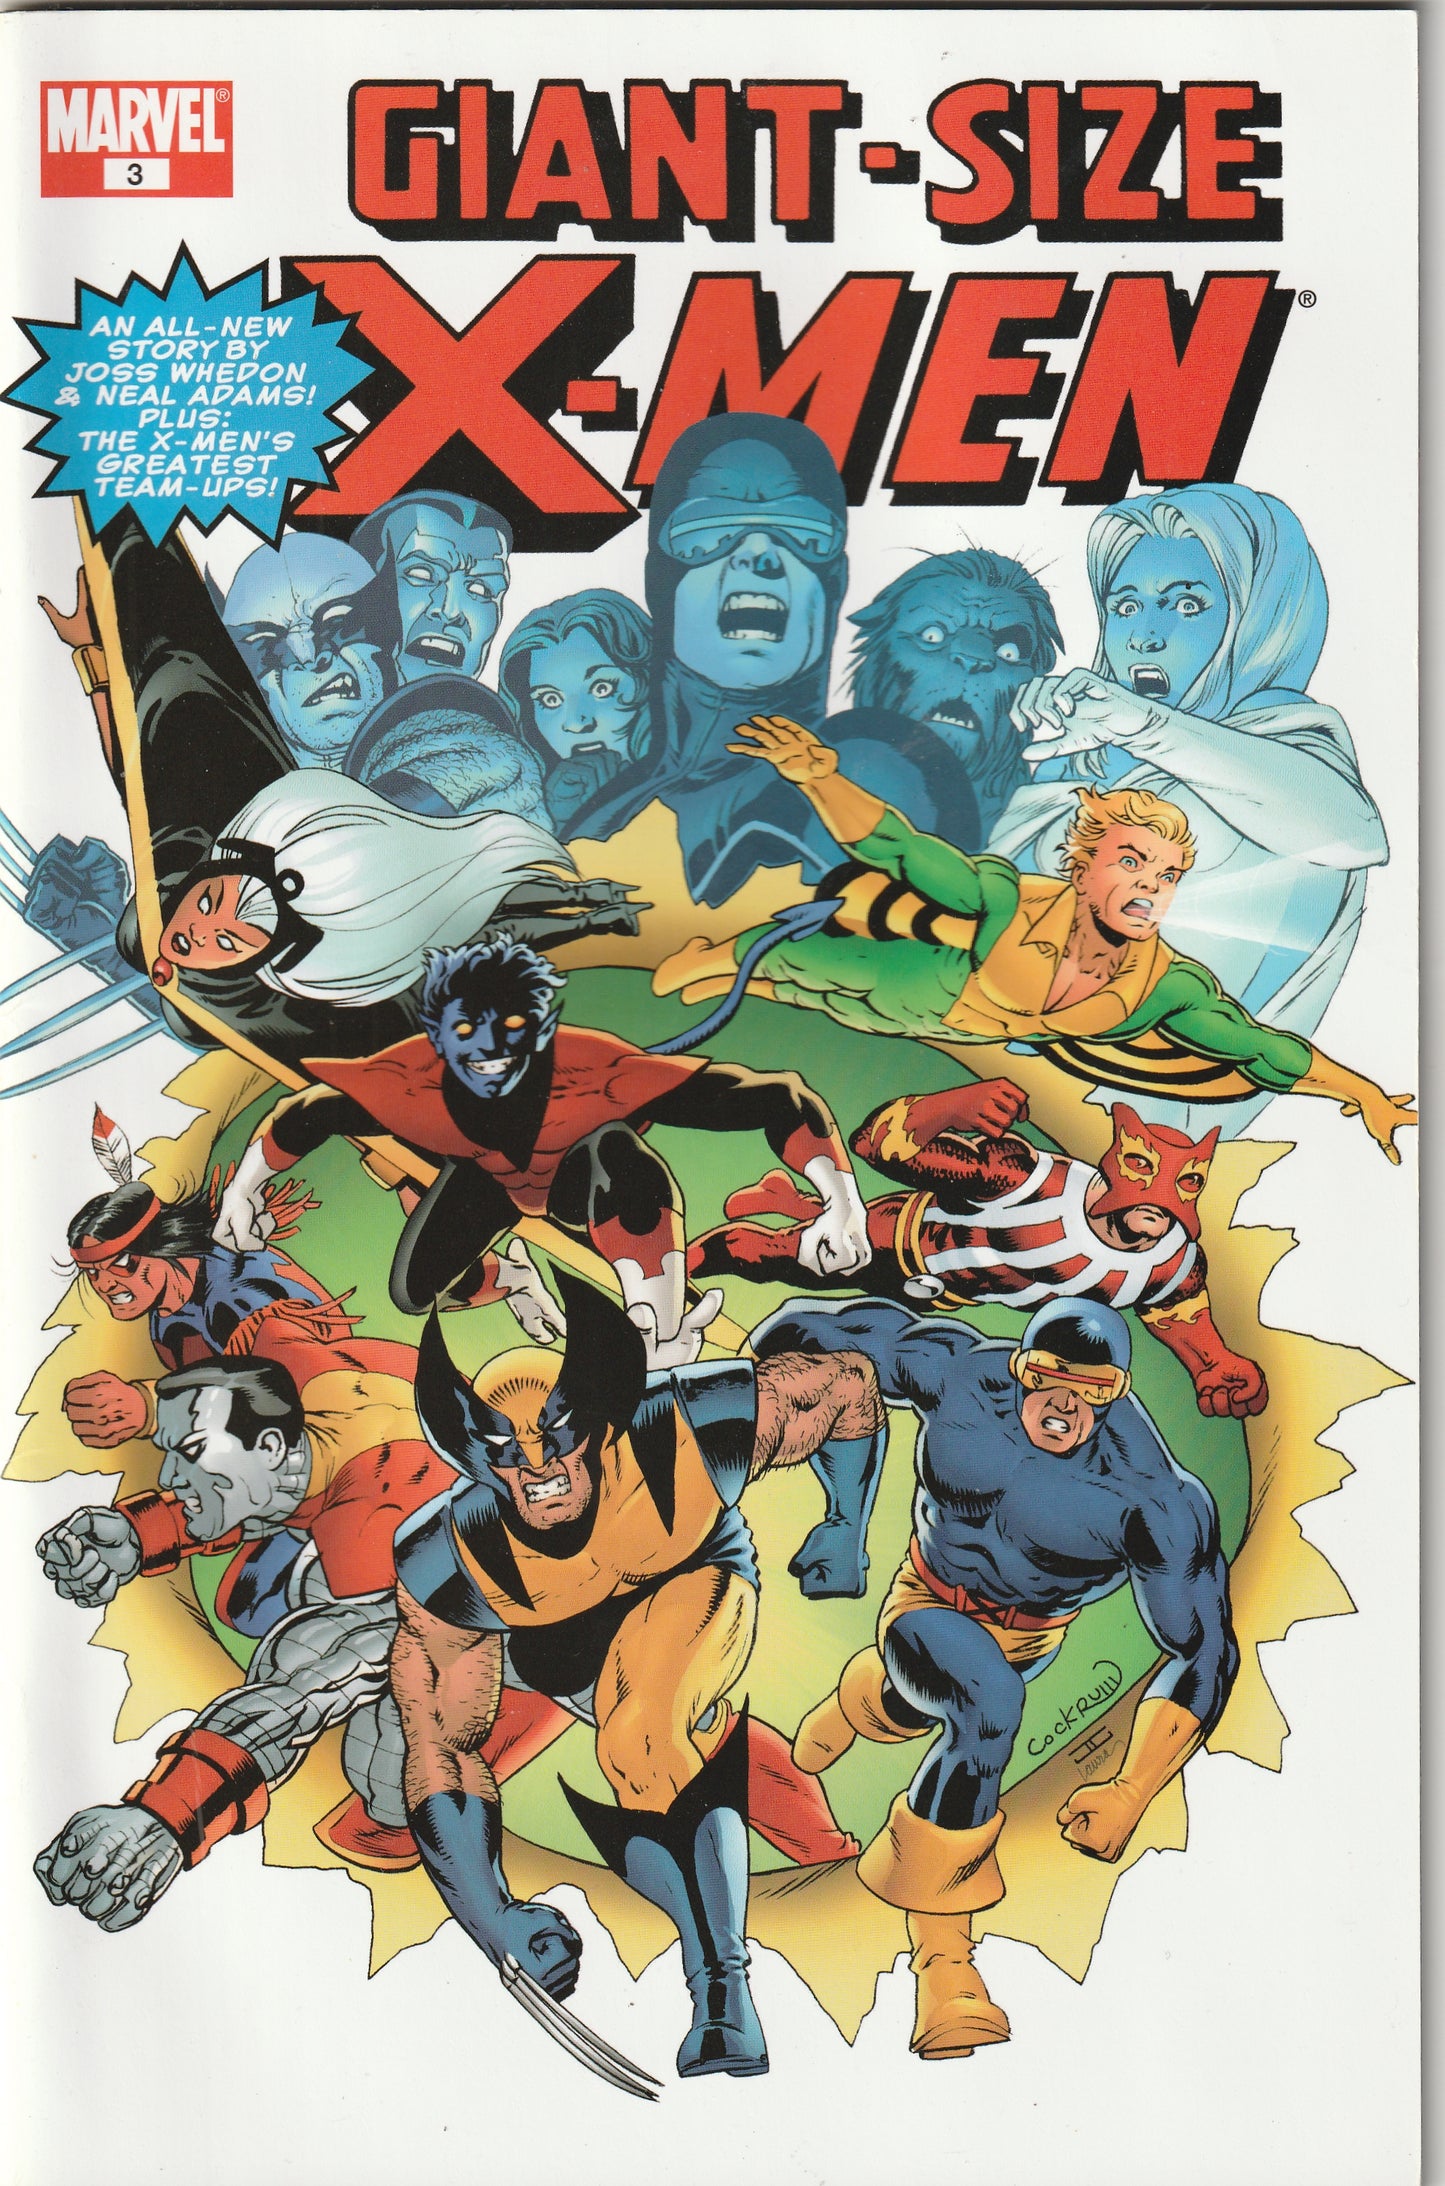 Giant Size X-Men #3 (2005)